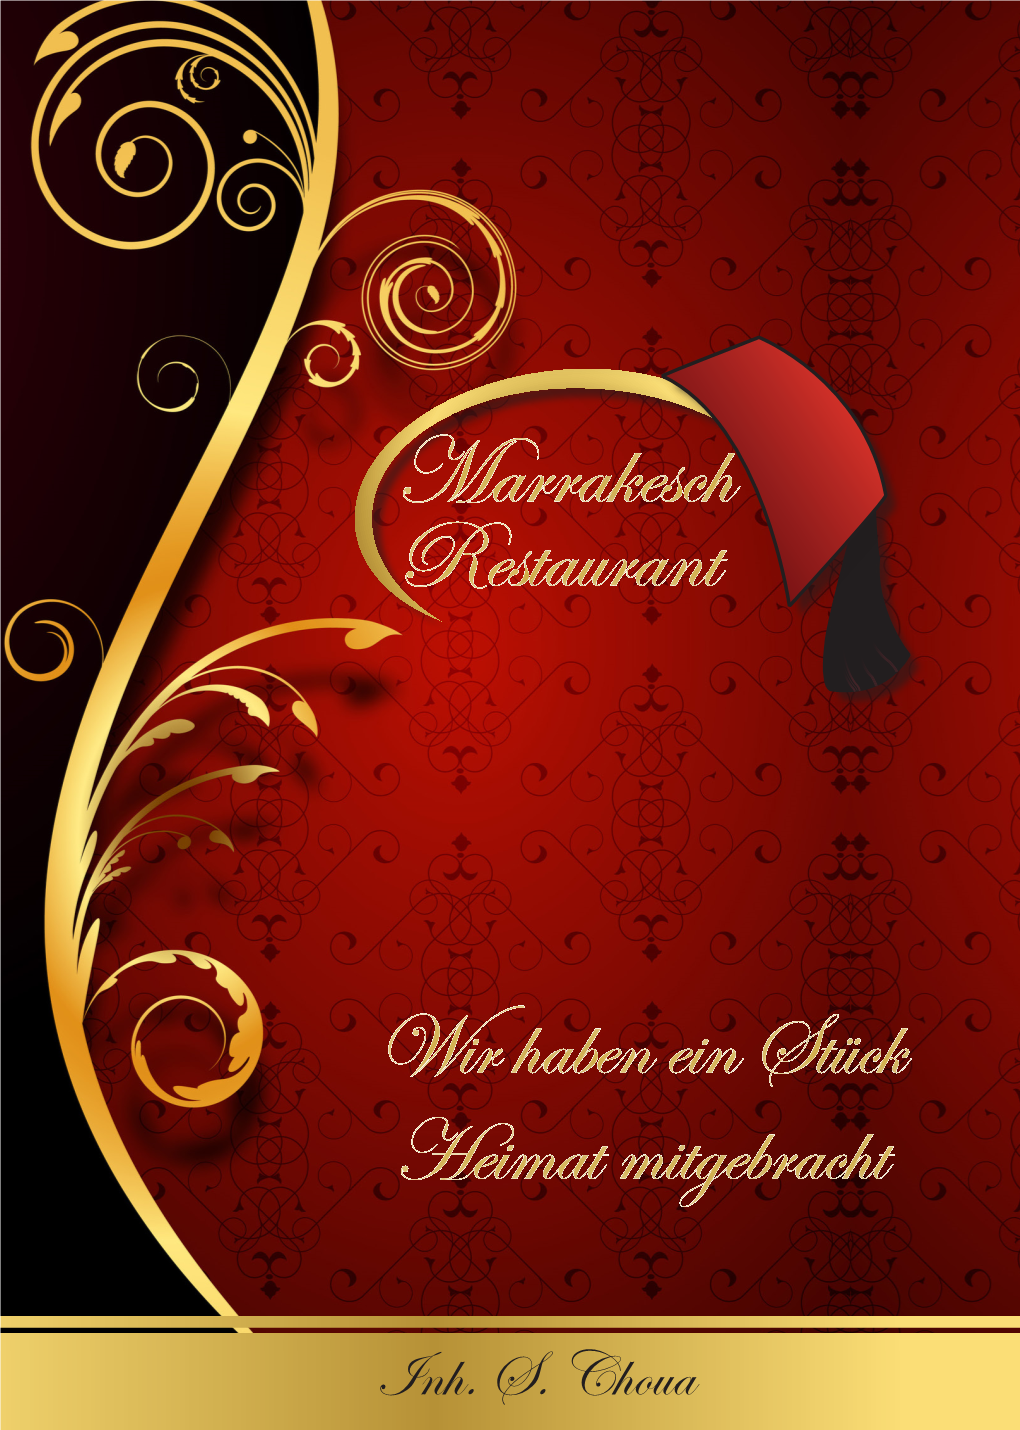 Marrakesch Restaurant Marrakesch Restaurant